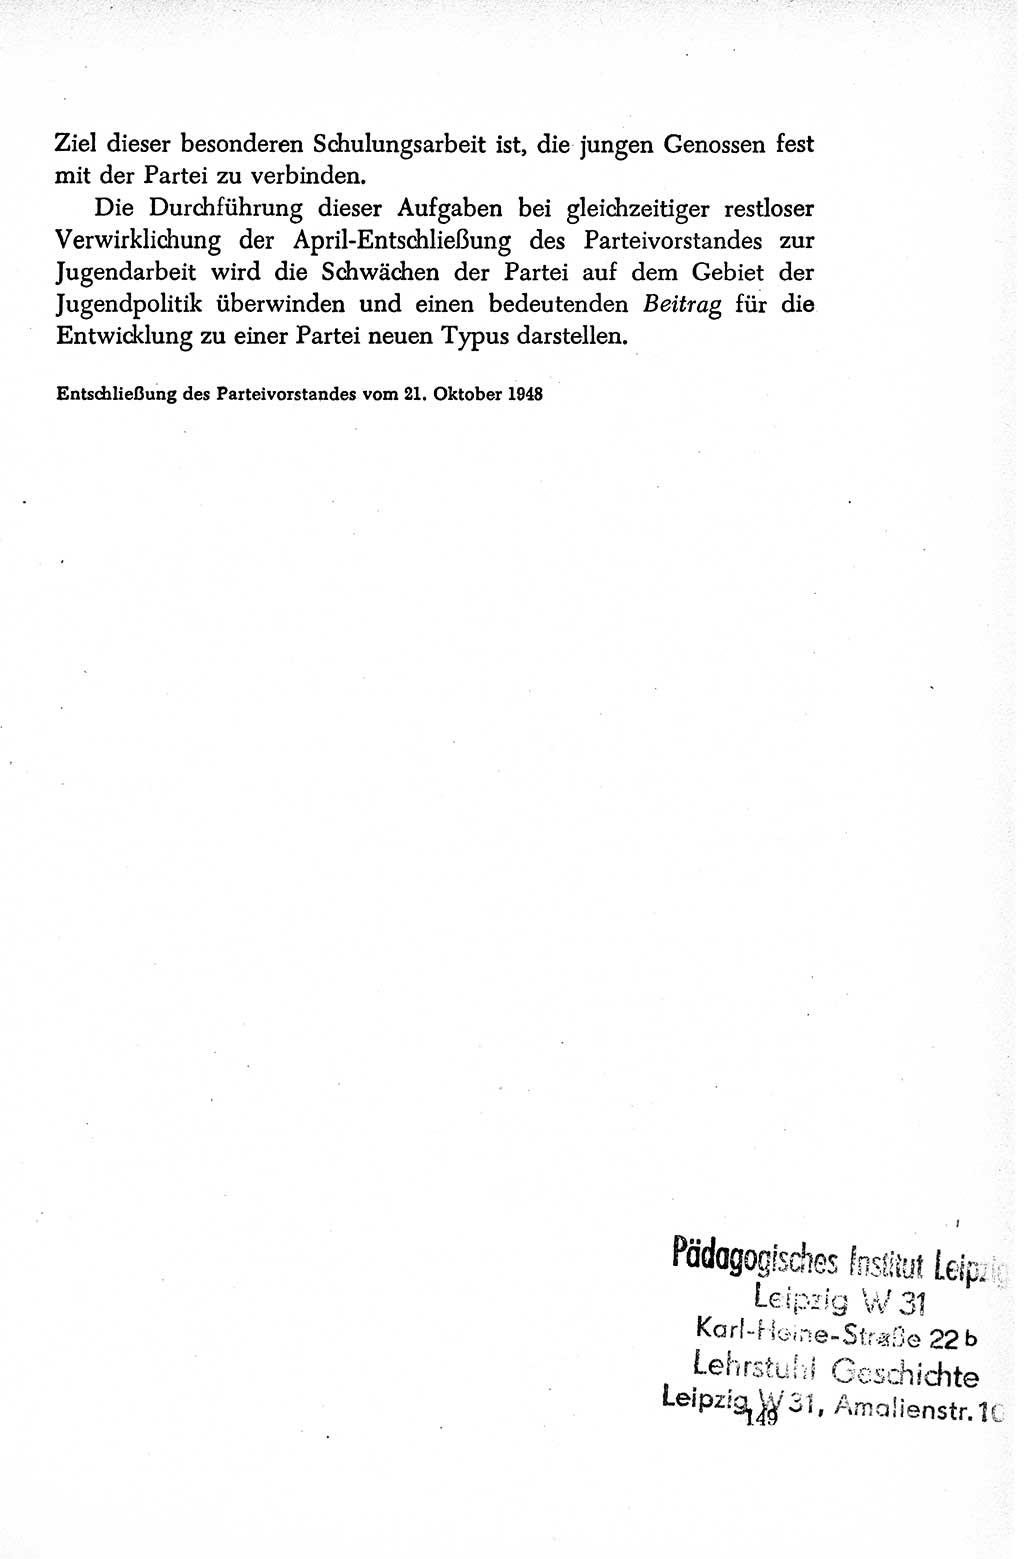 Dokumente der Sozialistischen Einheitspartei Deutschlands (SED) [Sowjetische Besatzungszone (SBZ) Deutschlands/Deutsche Demokratische Republik (DDR)] 1948-1950, Seite 149 (Dok. SED SBZ Dtl. DDR 1948-1950, S. 149)